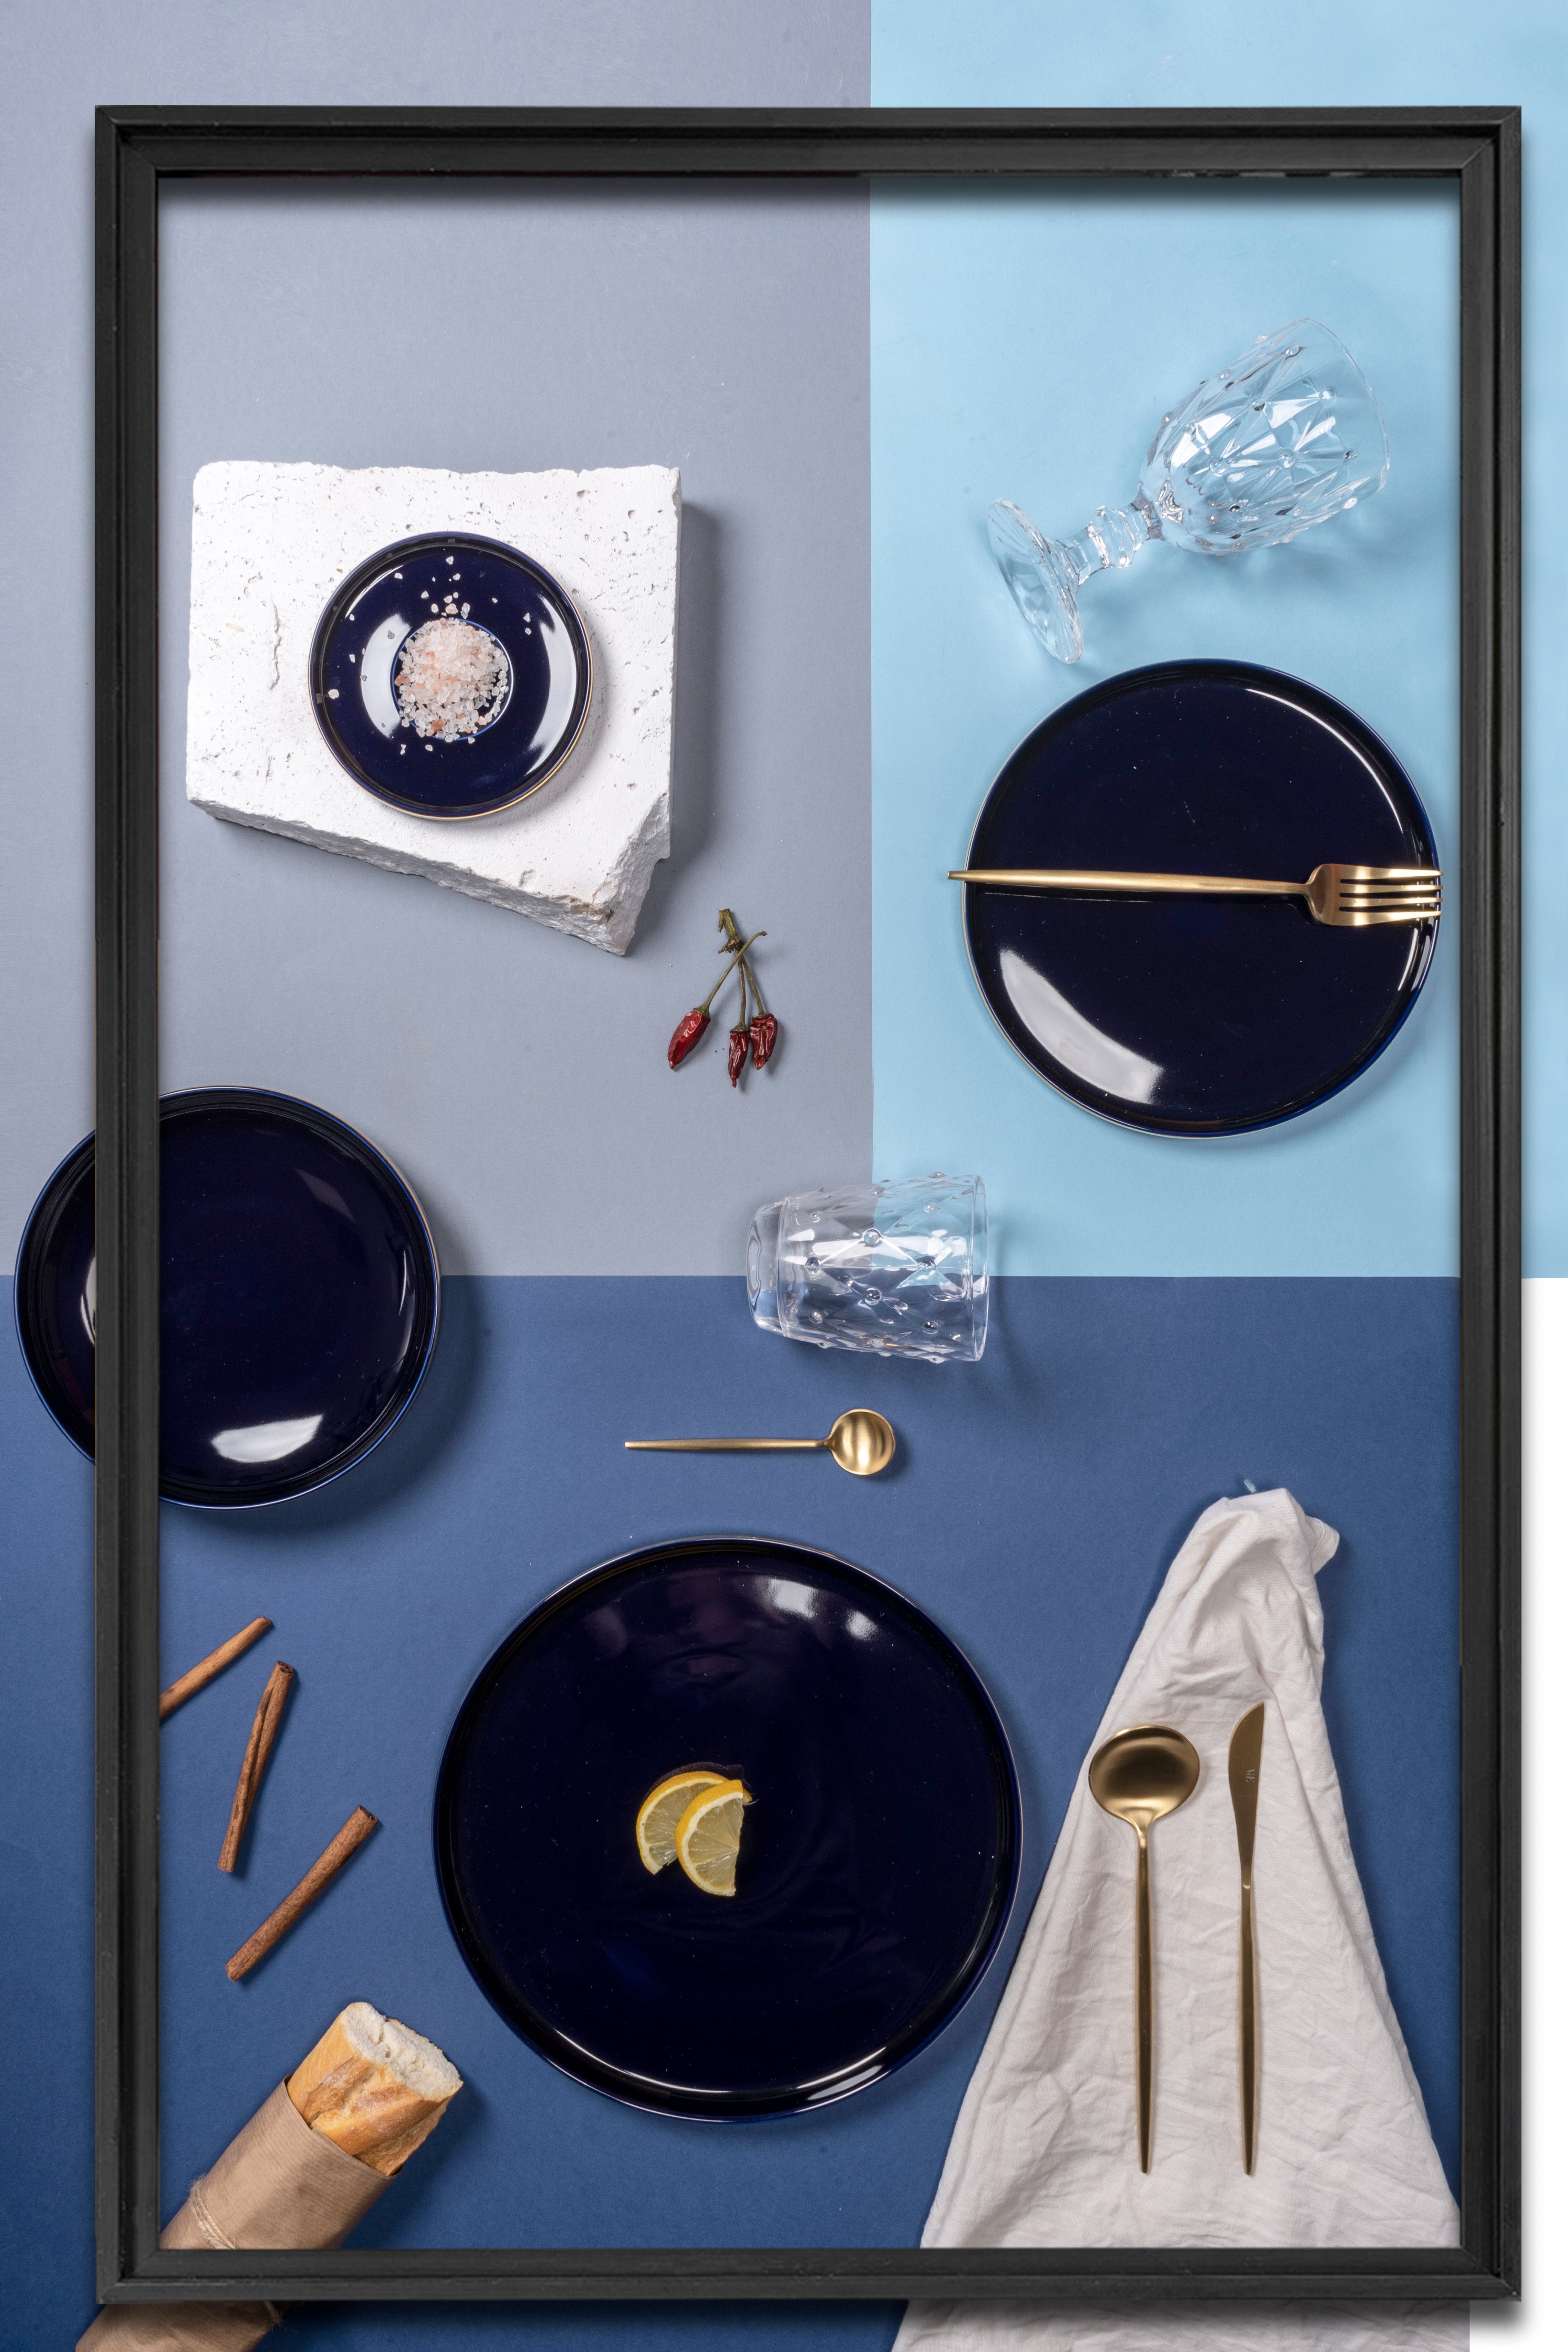 Tafelservice, Villa 4 für Luxury Geschirr-Set Fine Blue China-Porzellan, Teile, (12-tlg), 12 Service, Personen Teller-Set d'Este Personen, 4